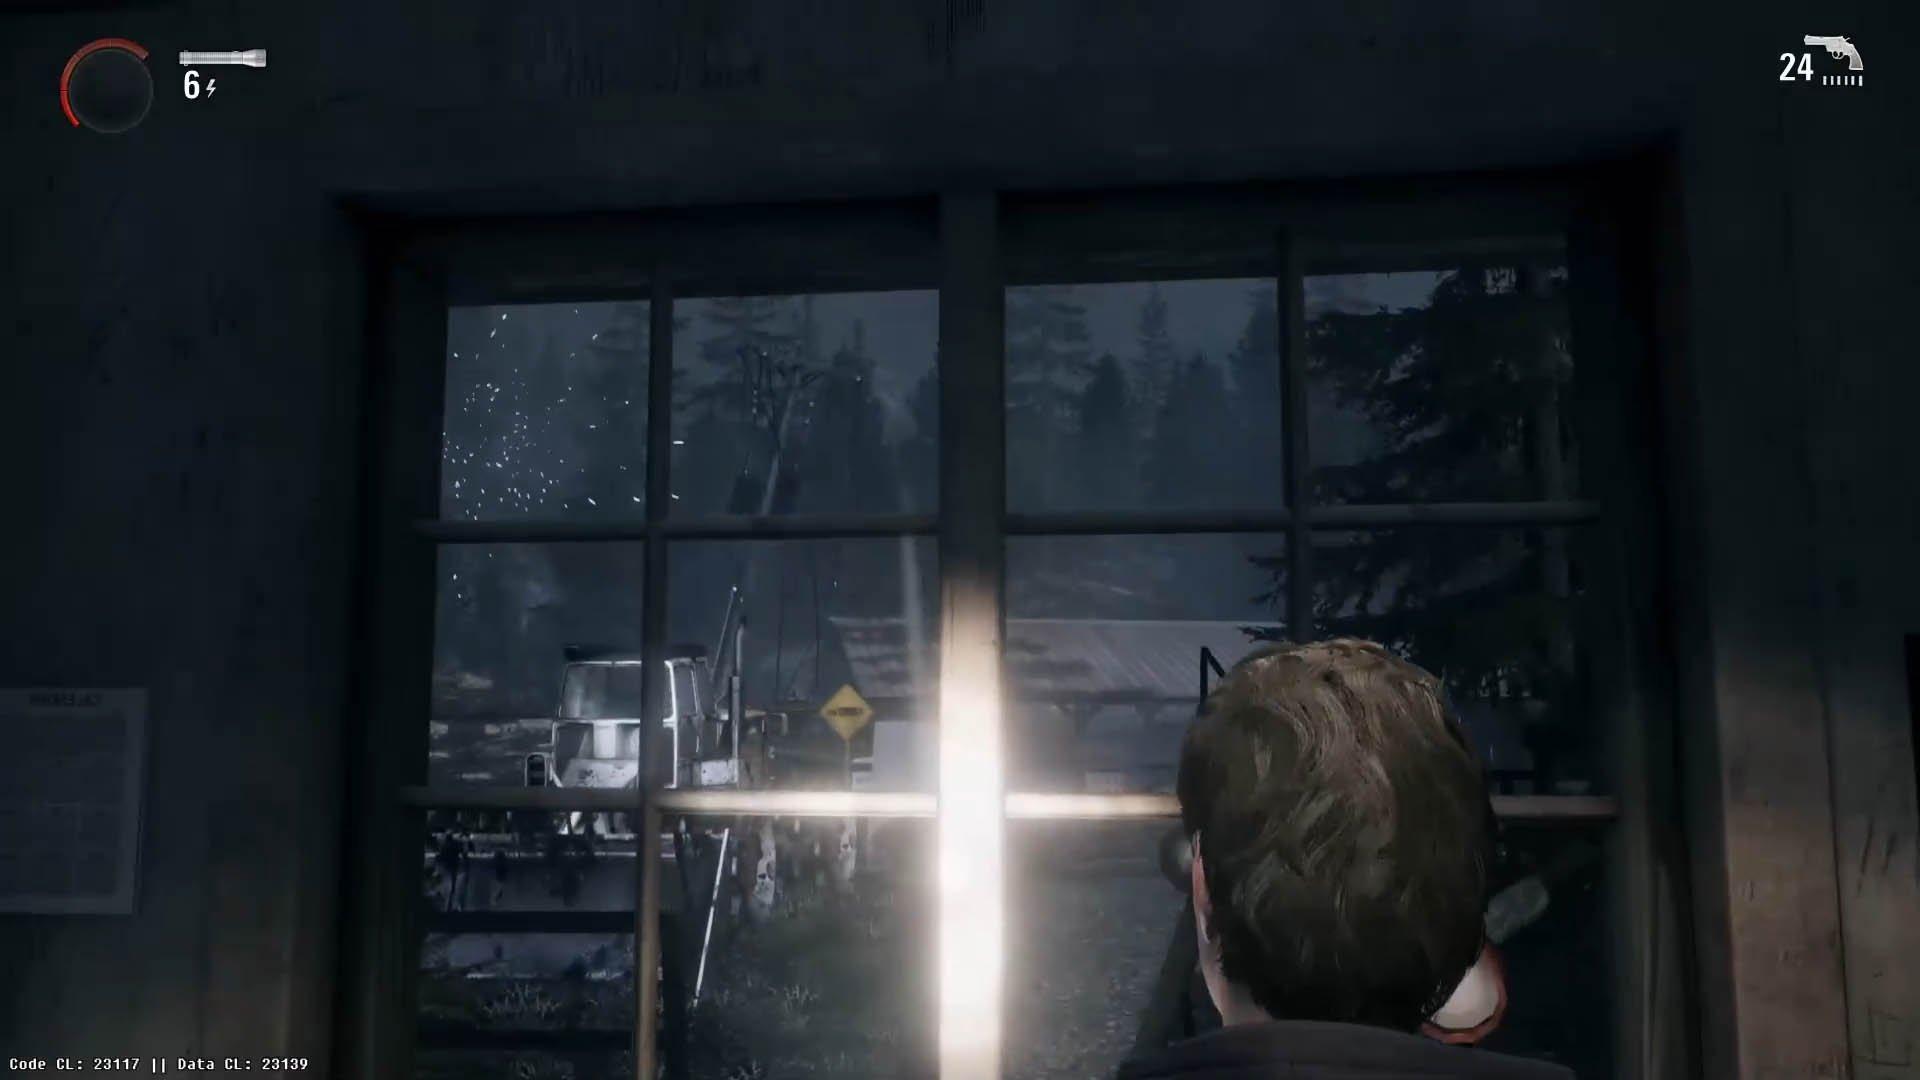 Alan Wake 2 poderá rodar a 60fps no PlayStation 5 e Xbox Series X -  EvilHazard